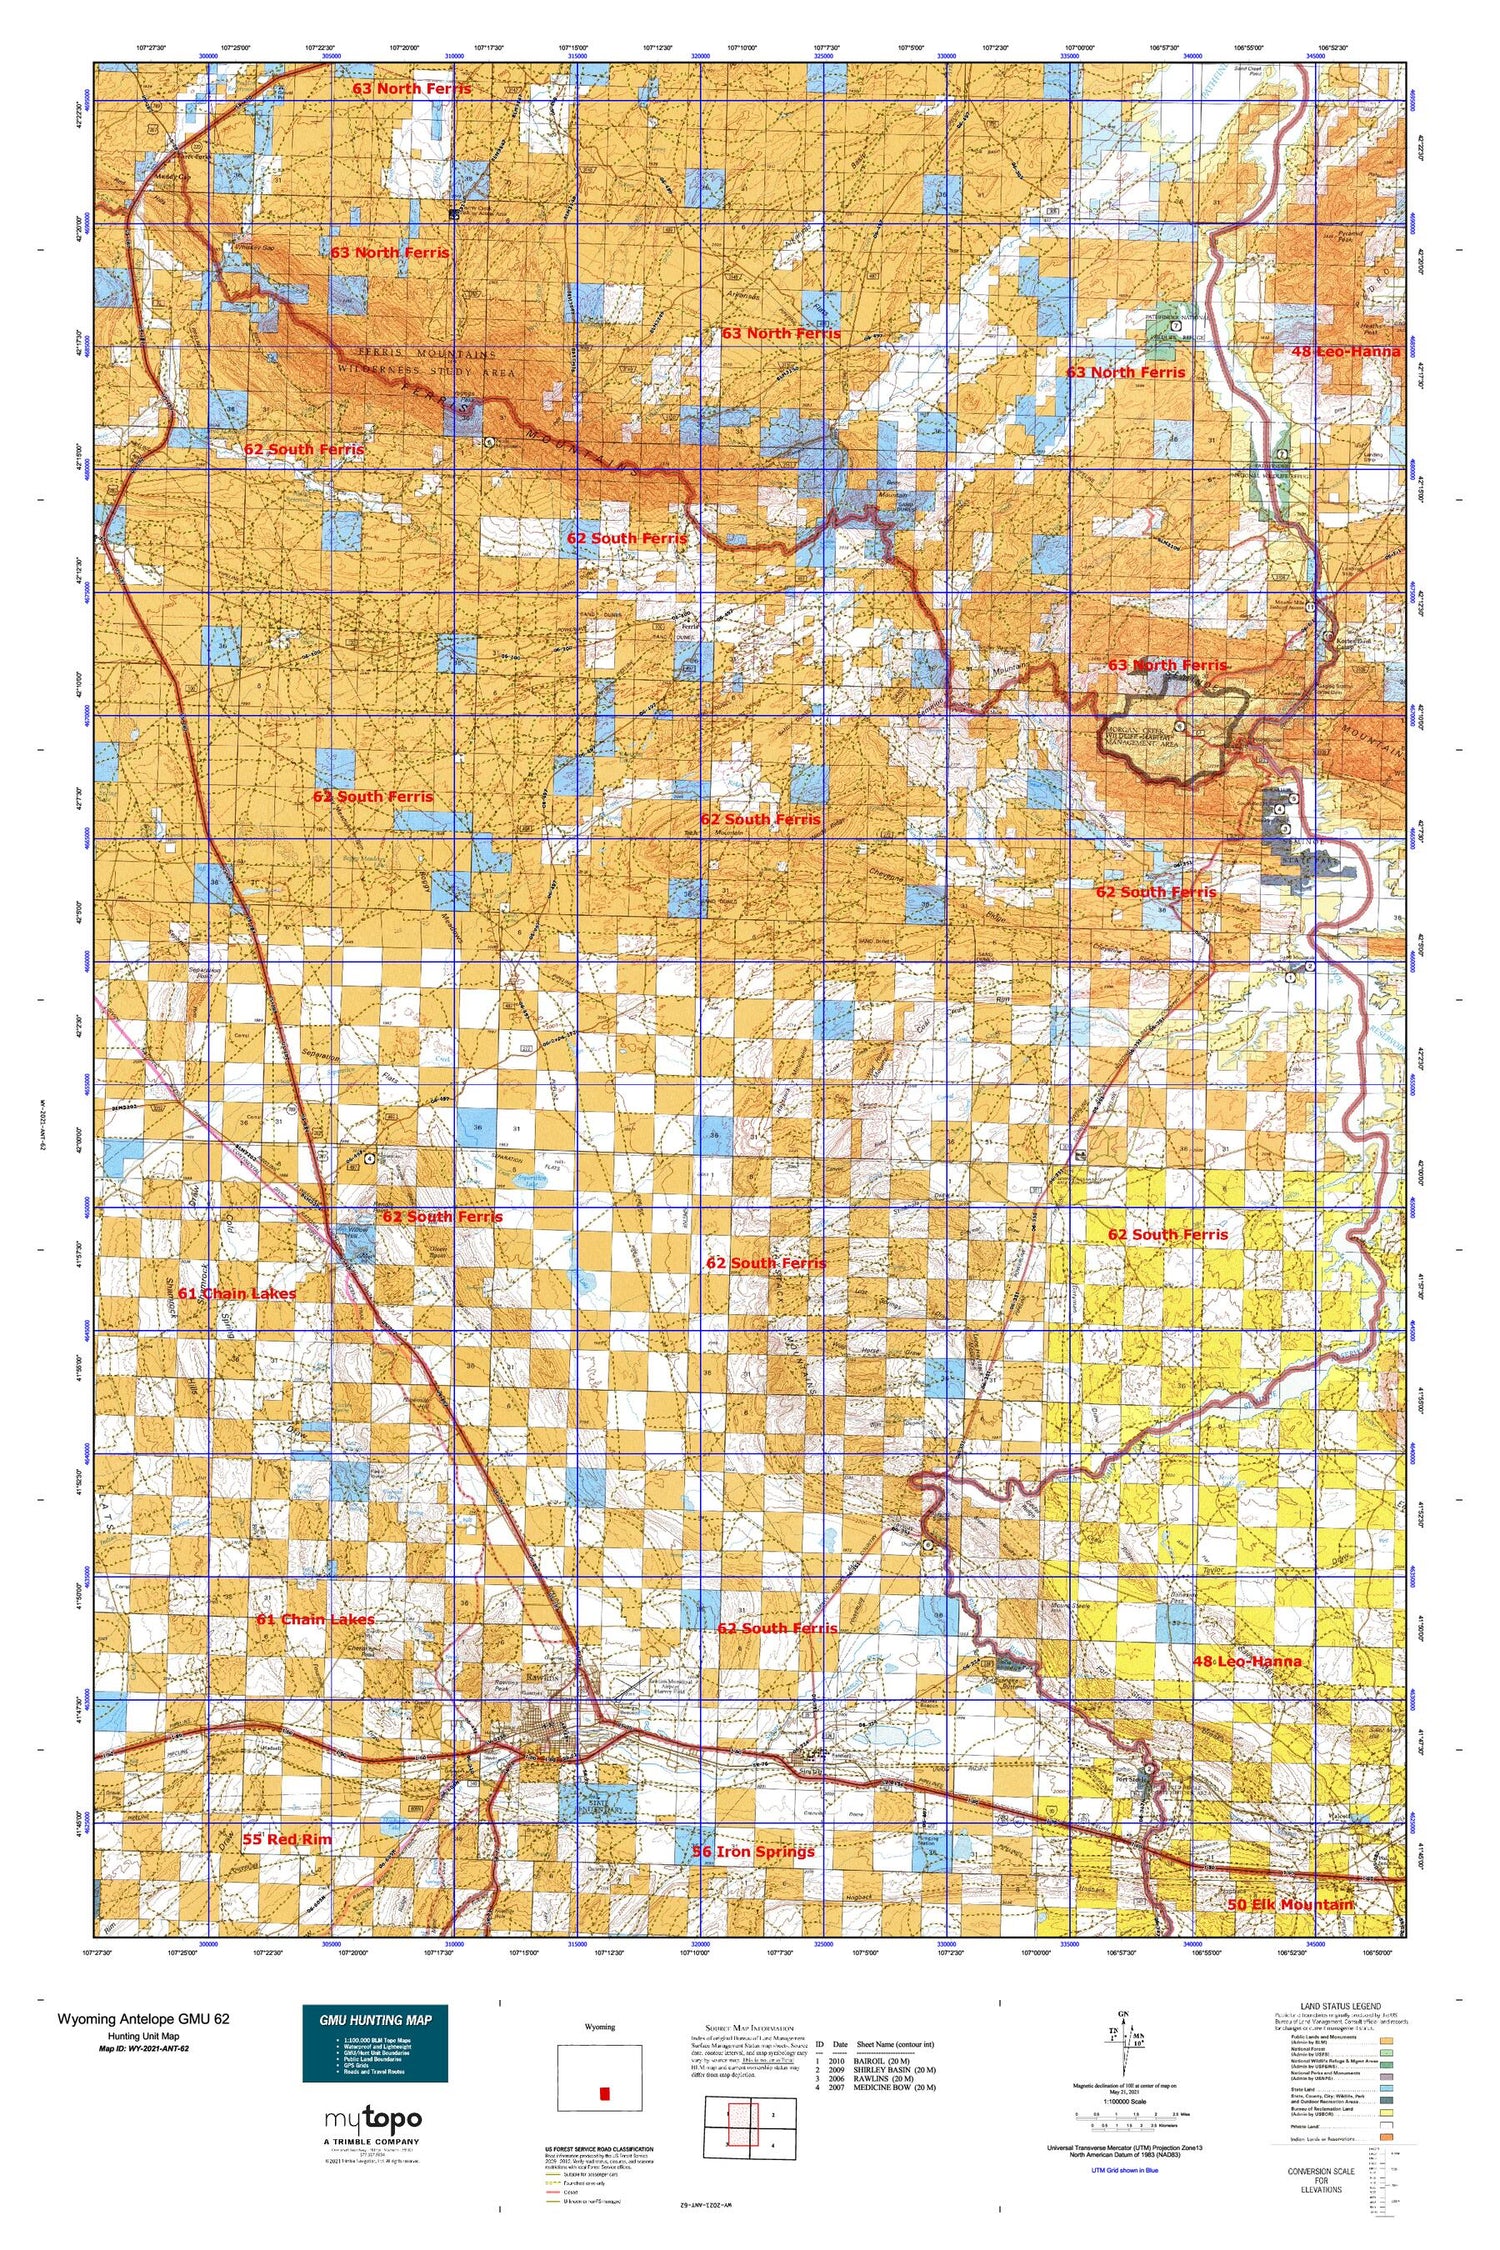 Wyoming Antelope GMU 62 Map Image